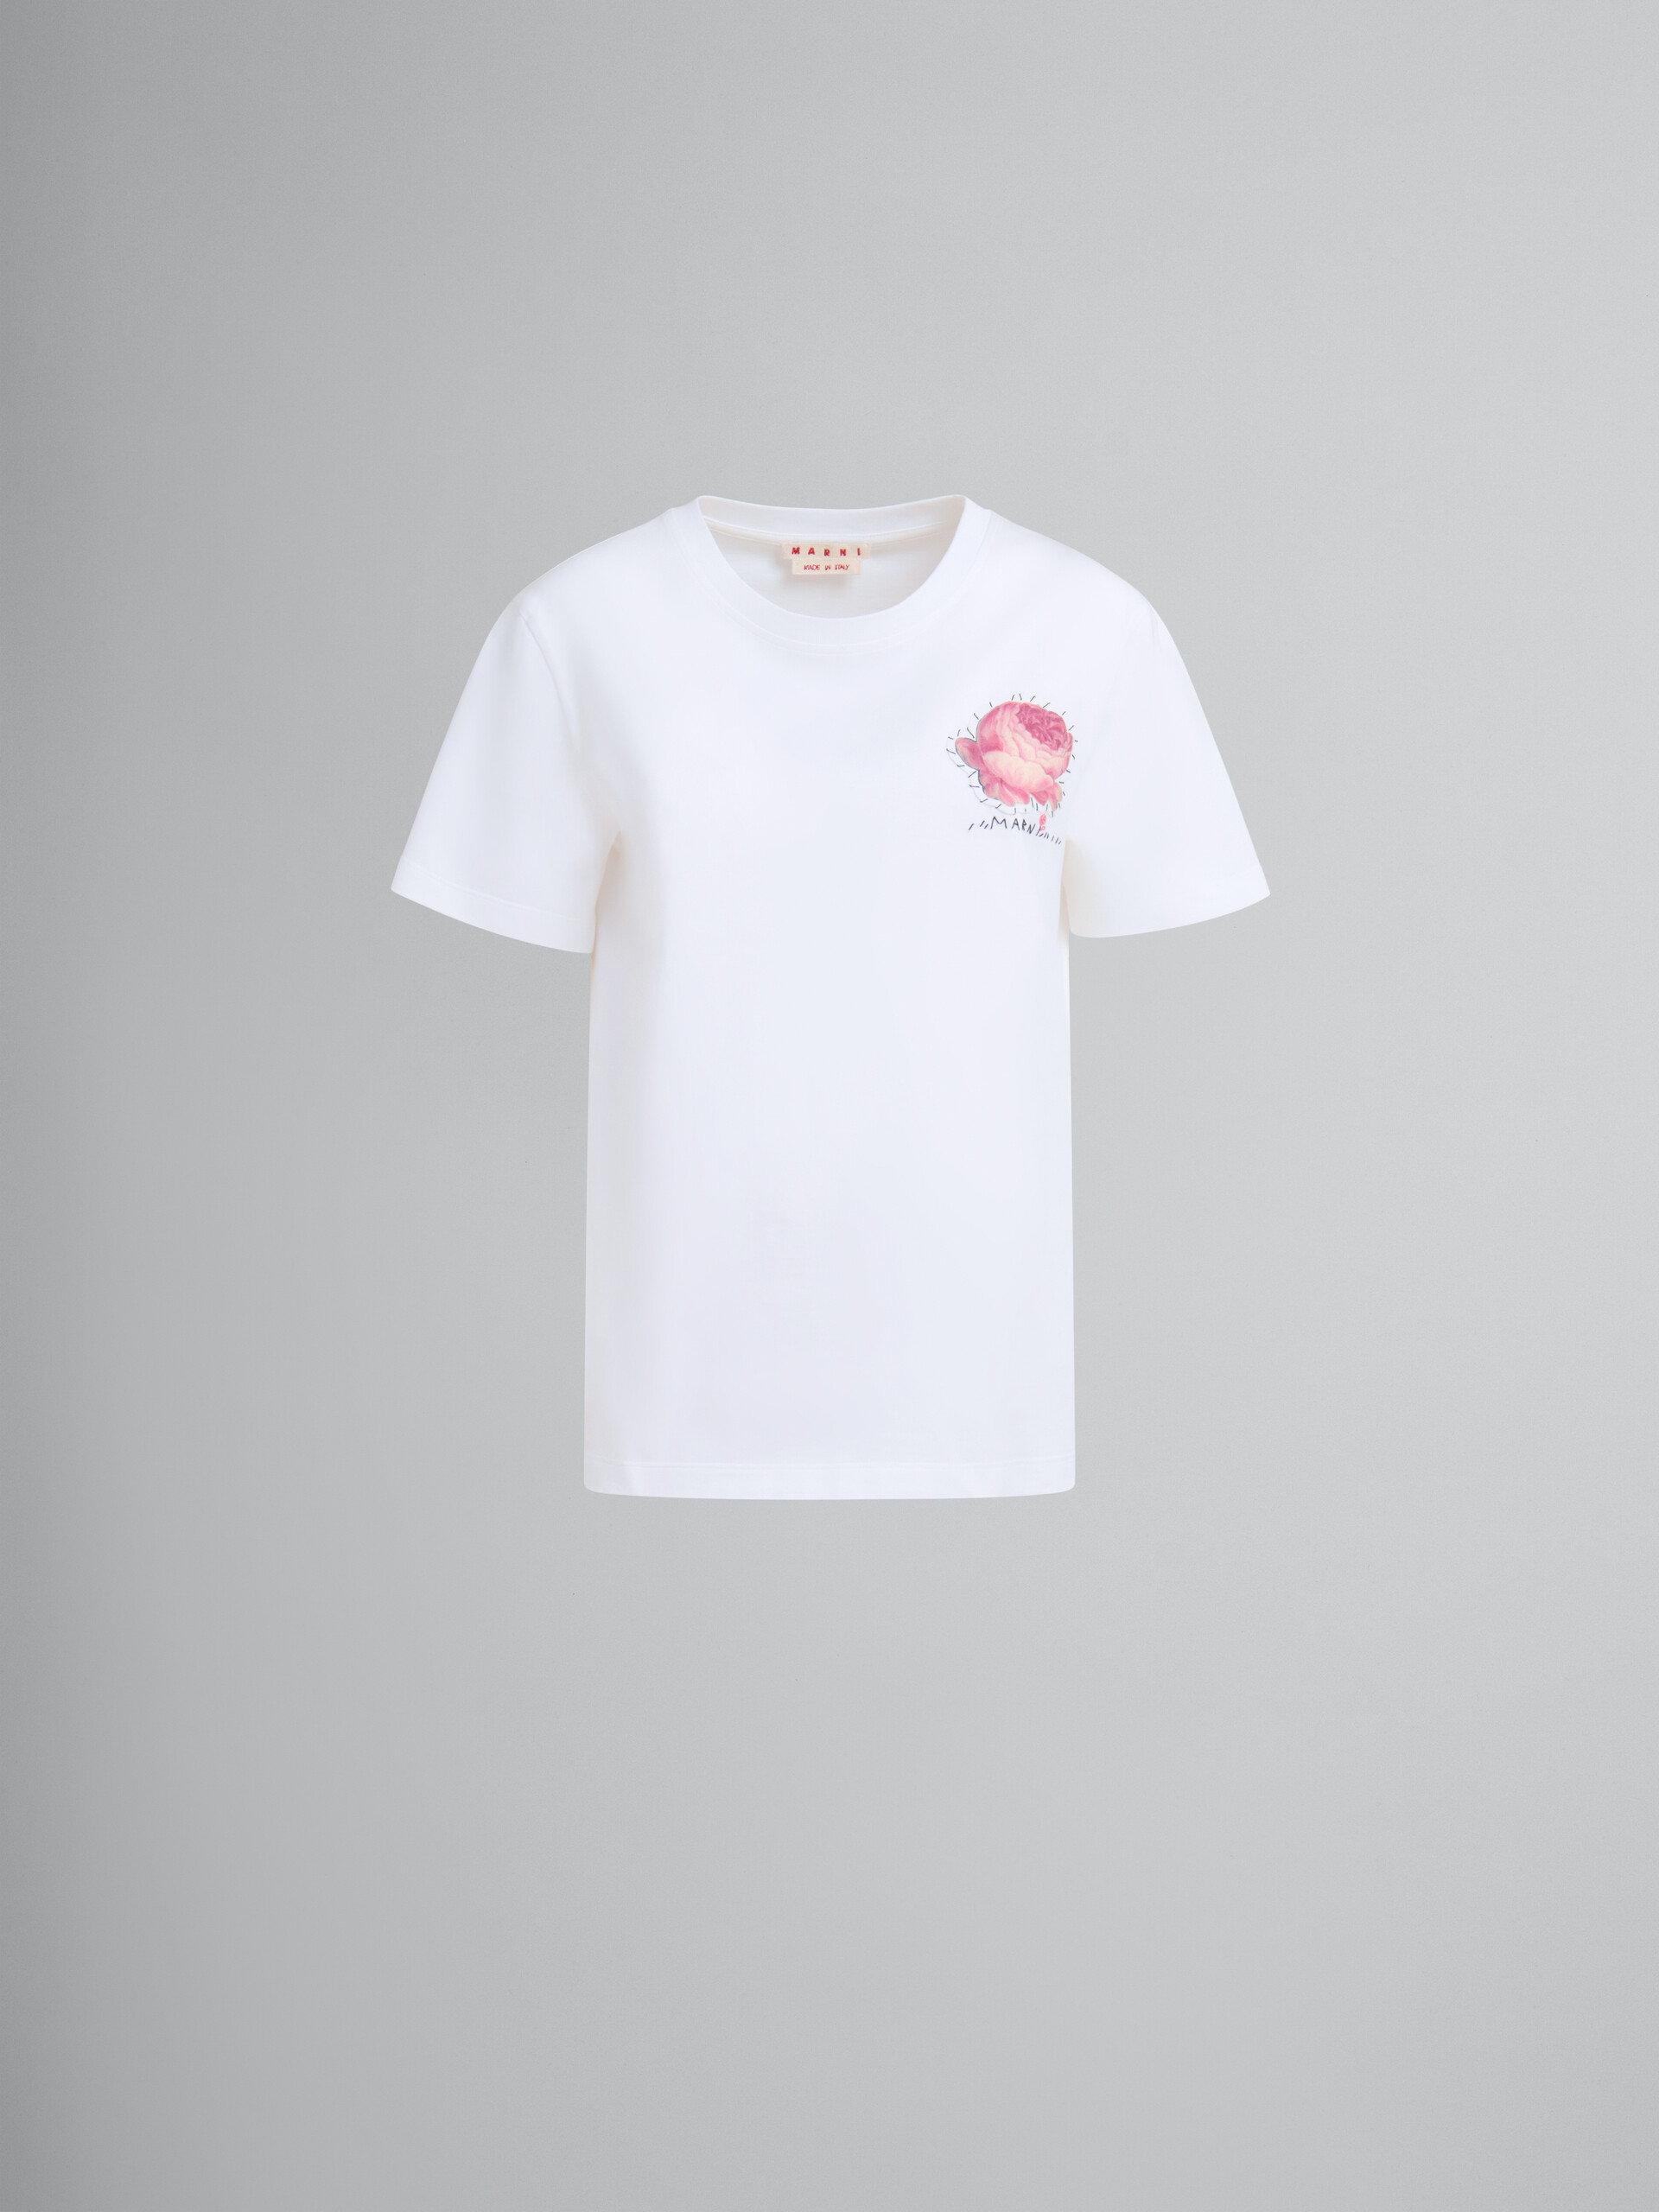 T-shirt in cotone biologico bianco con applicazione a fiore - T-shirt - Image 1